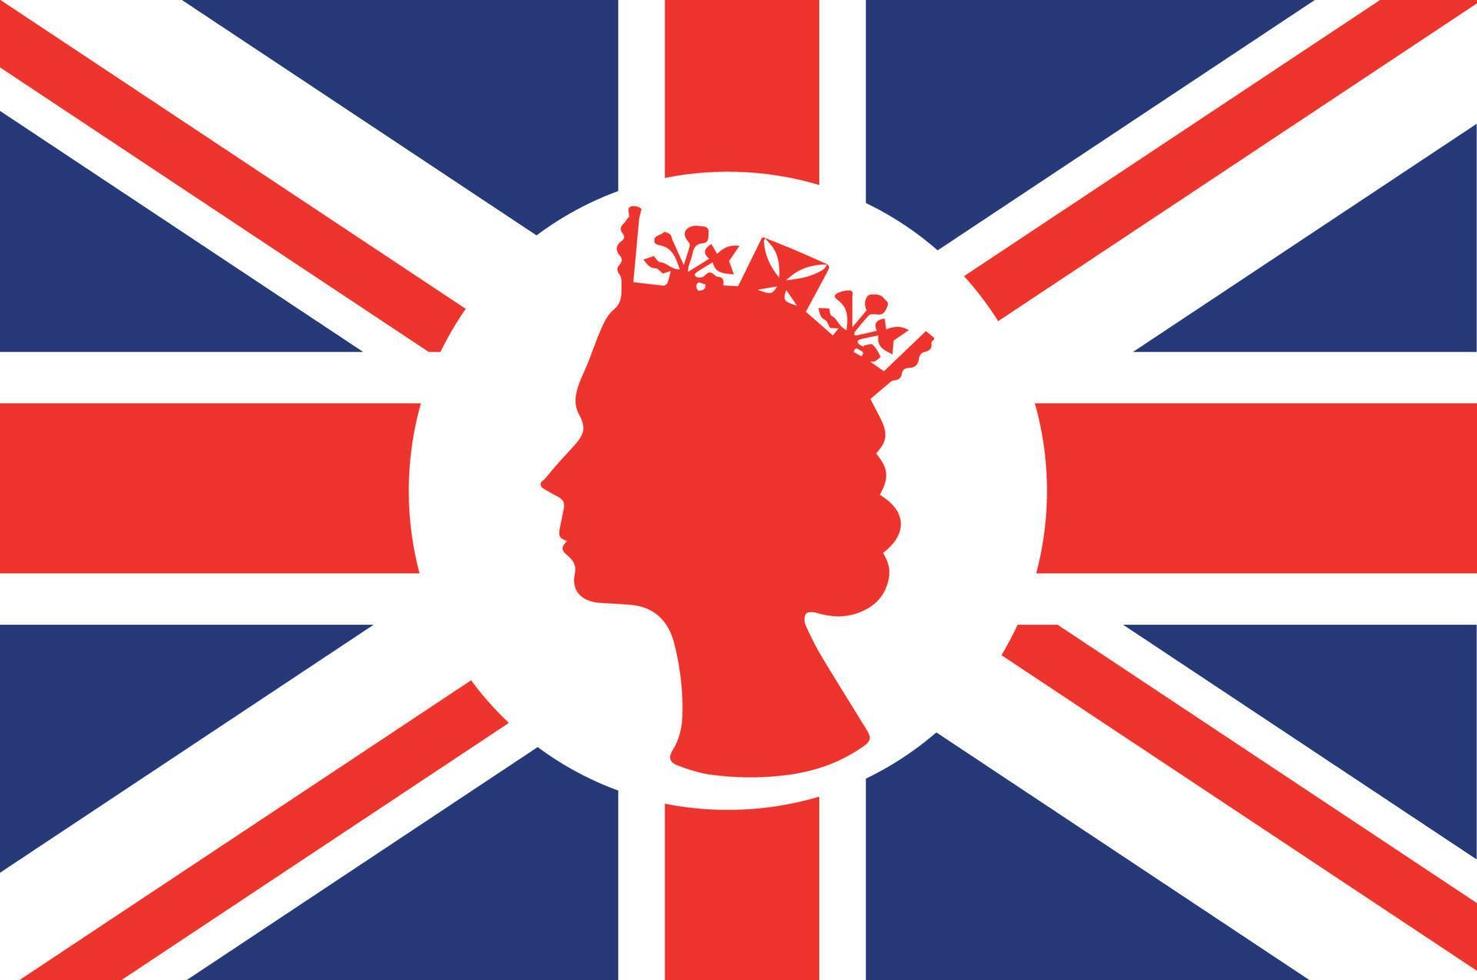 Elizabeth drottning ansikte vit och röd med brittiskt förenad rike flagga nationell Europa emblem ikon vektor illustration abstrakt design element